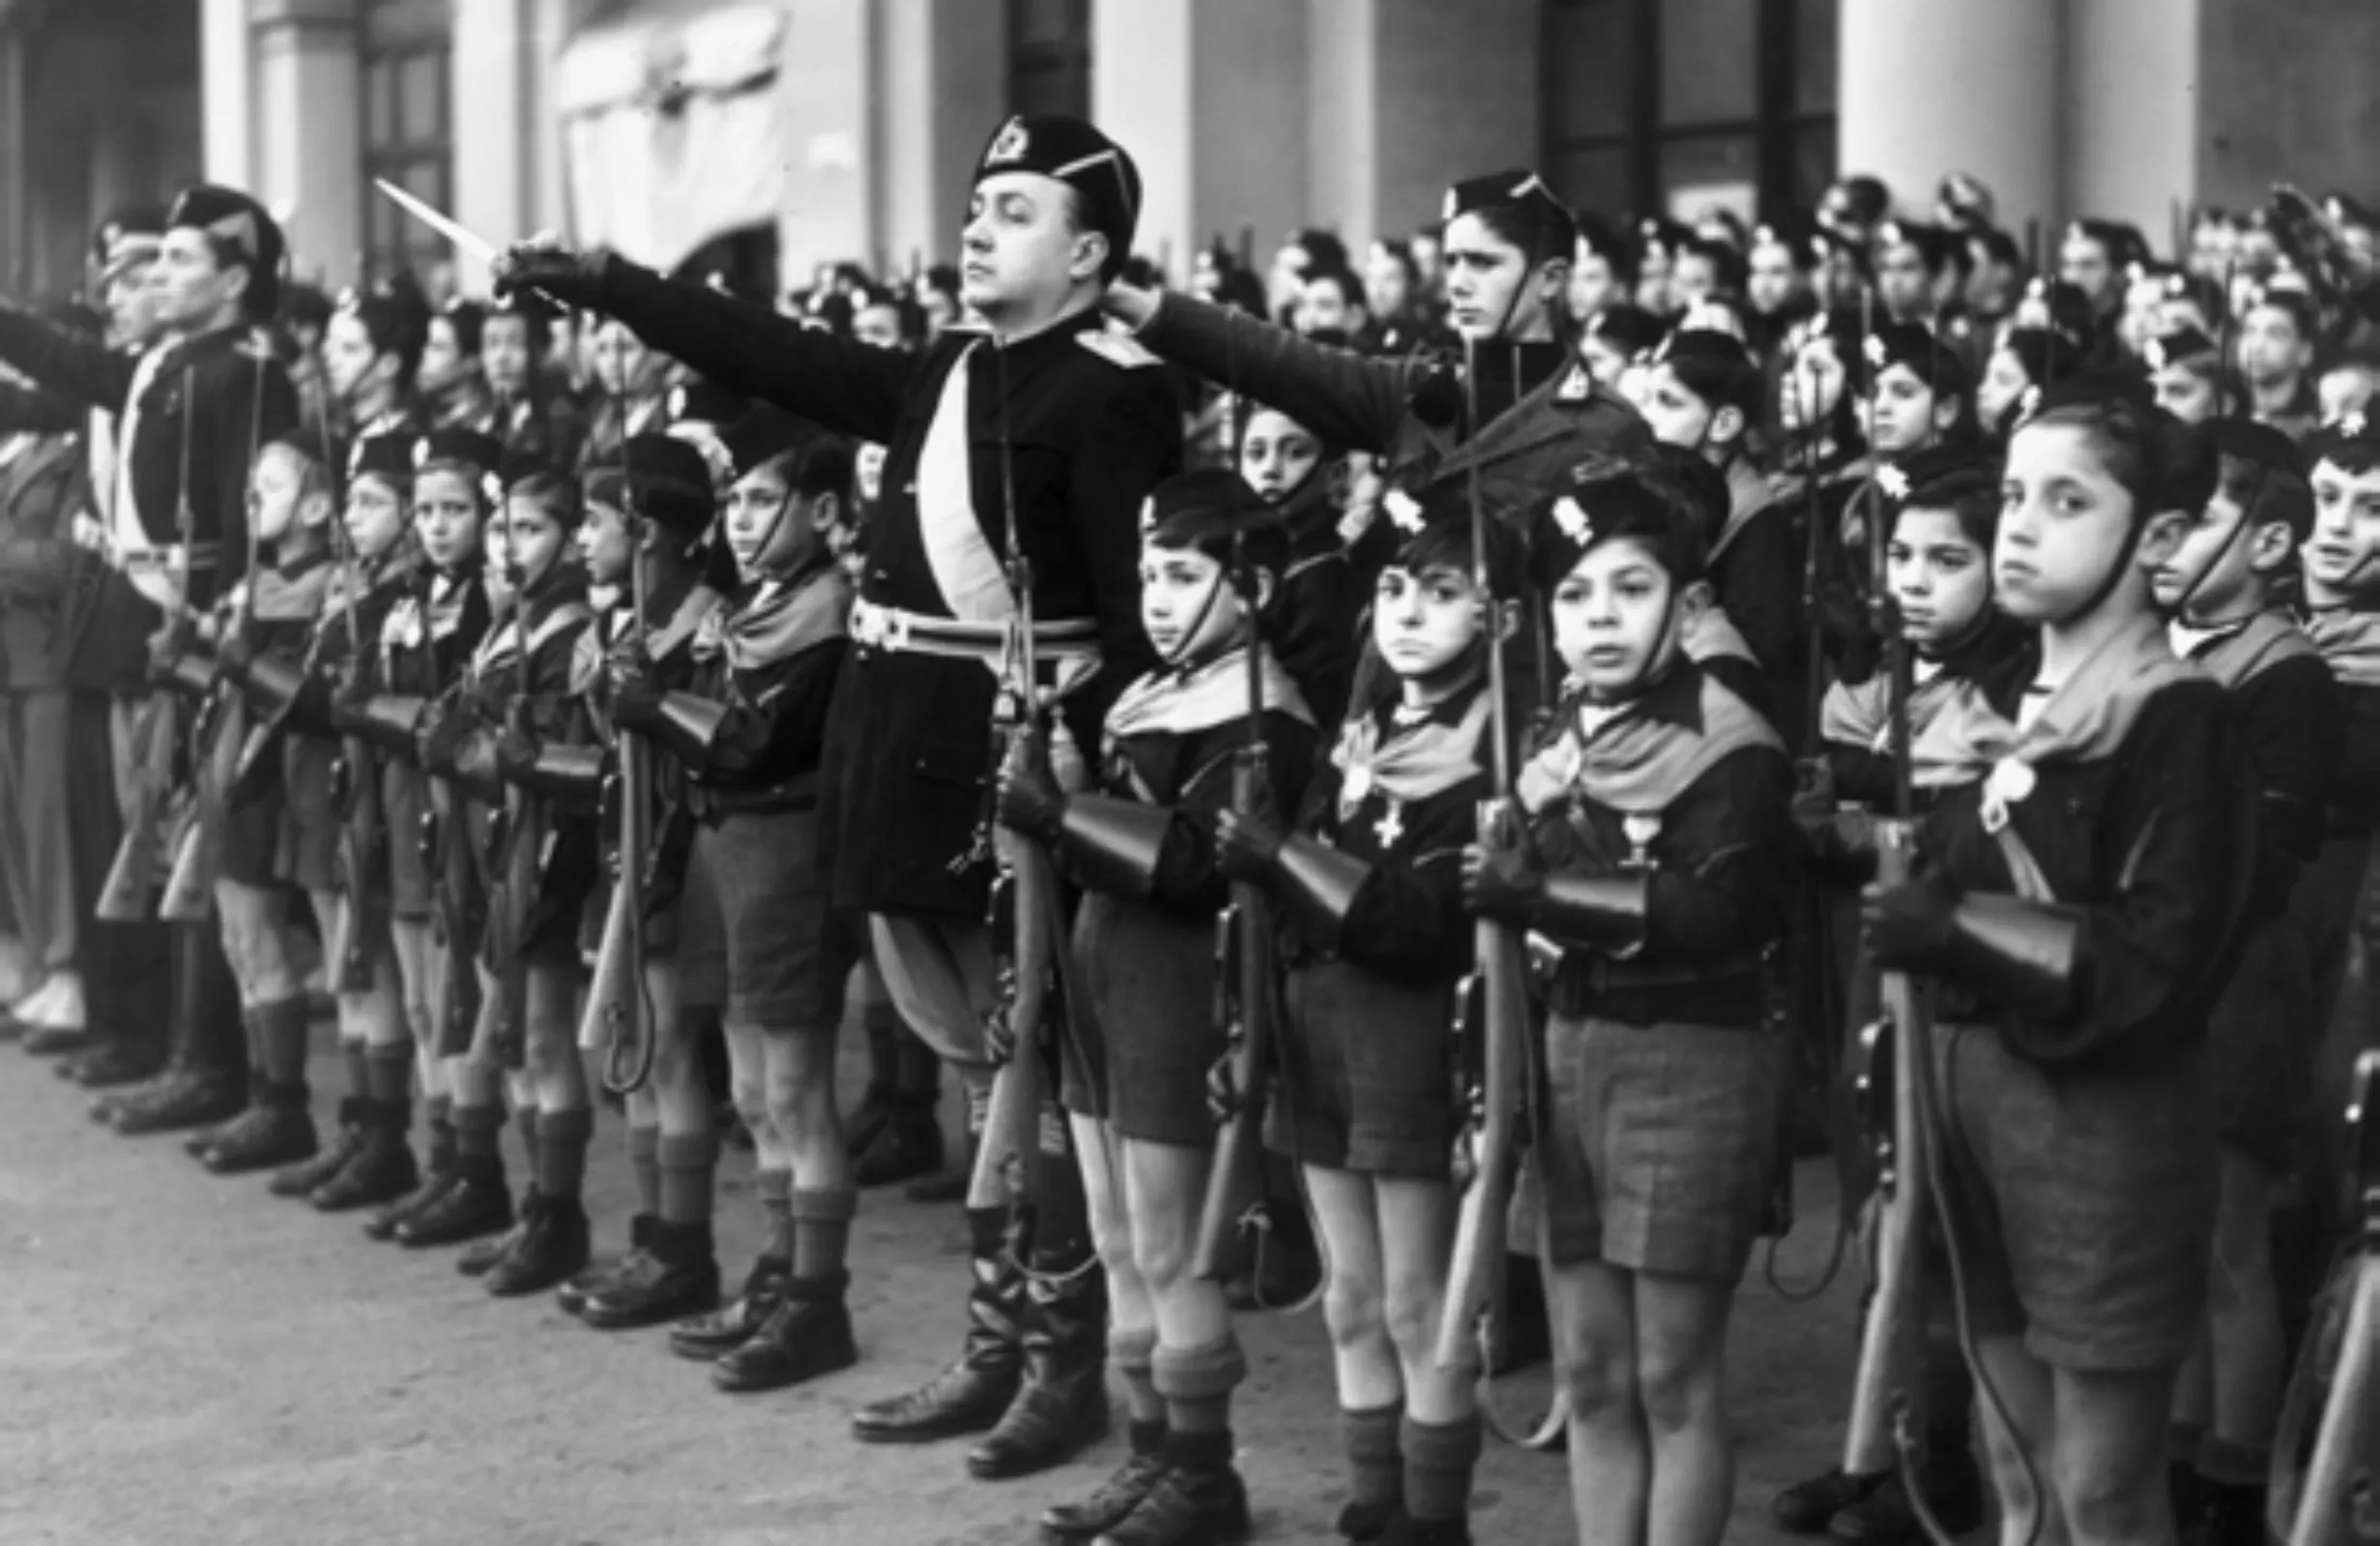 Membres de l'organització juvenil feixista italiana Balilla en formació militar